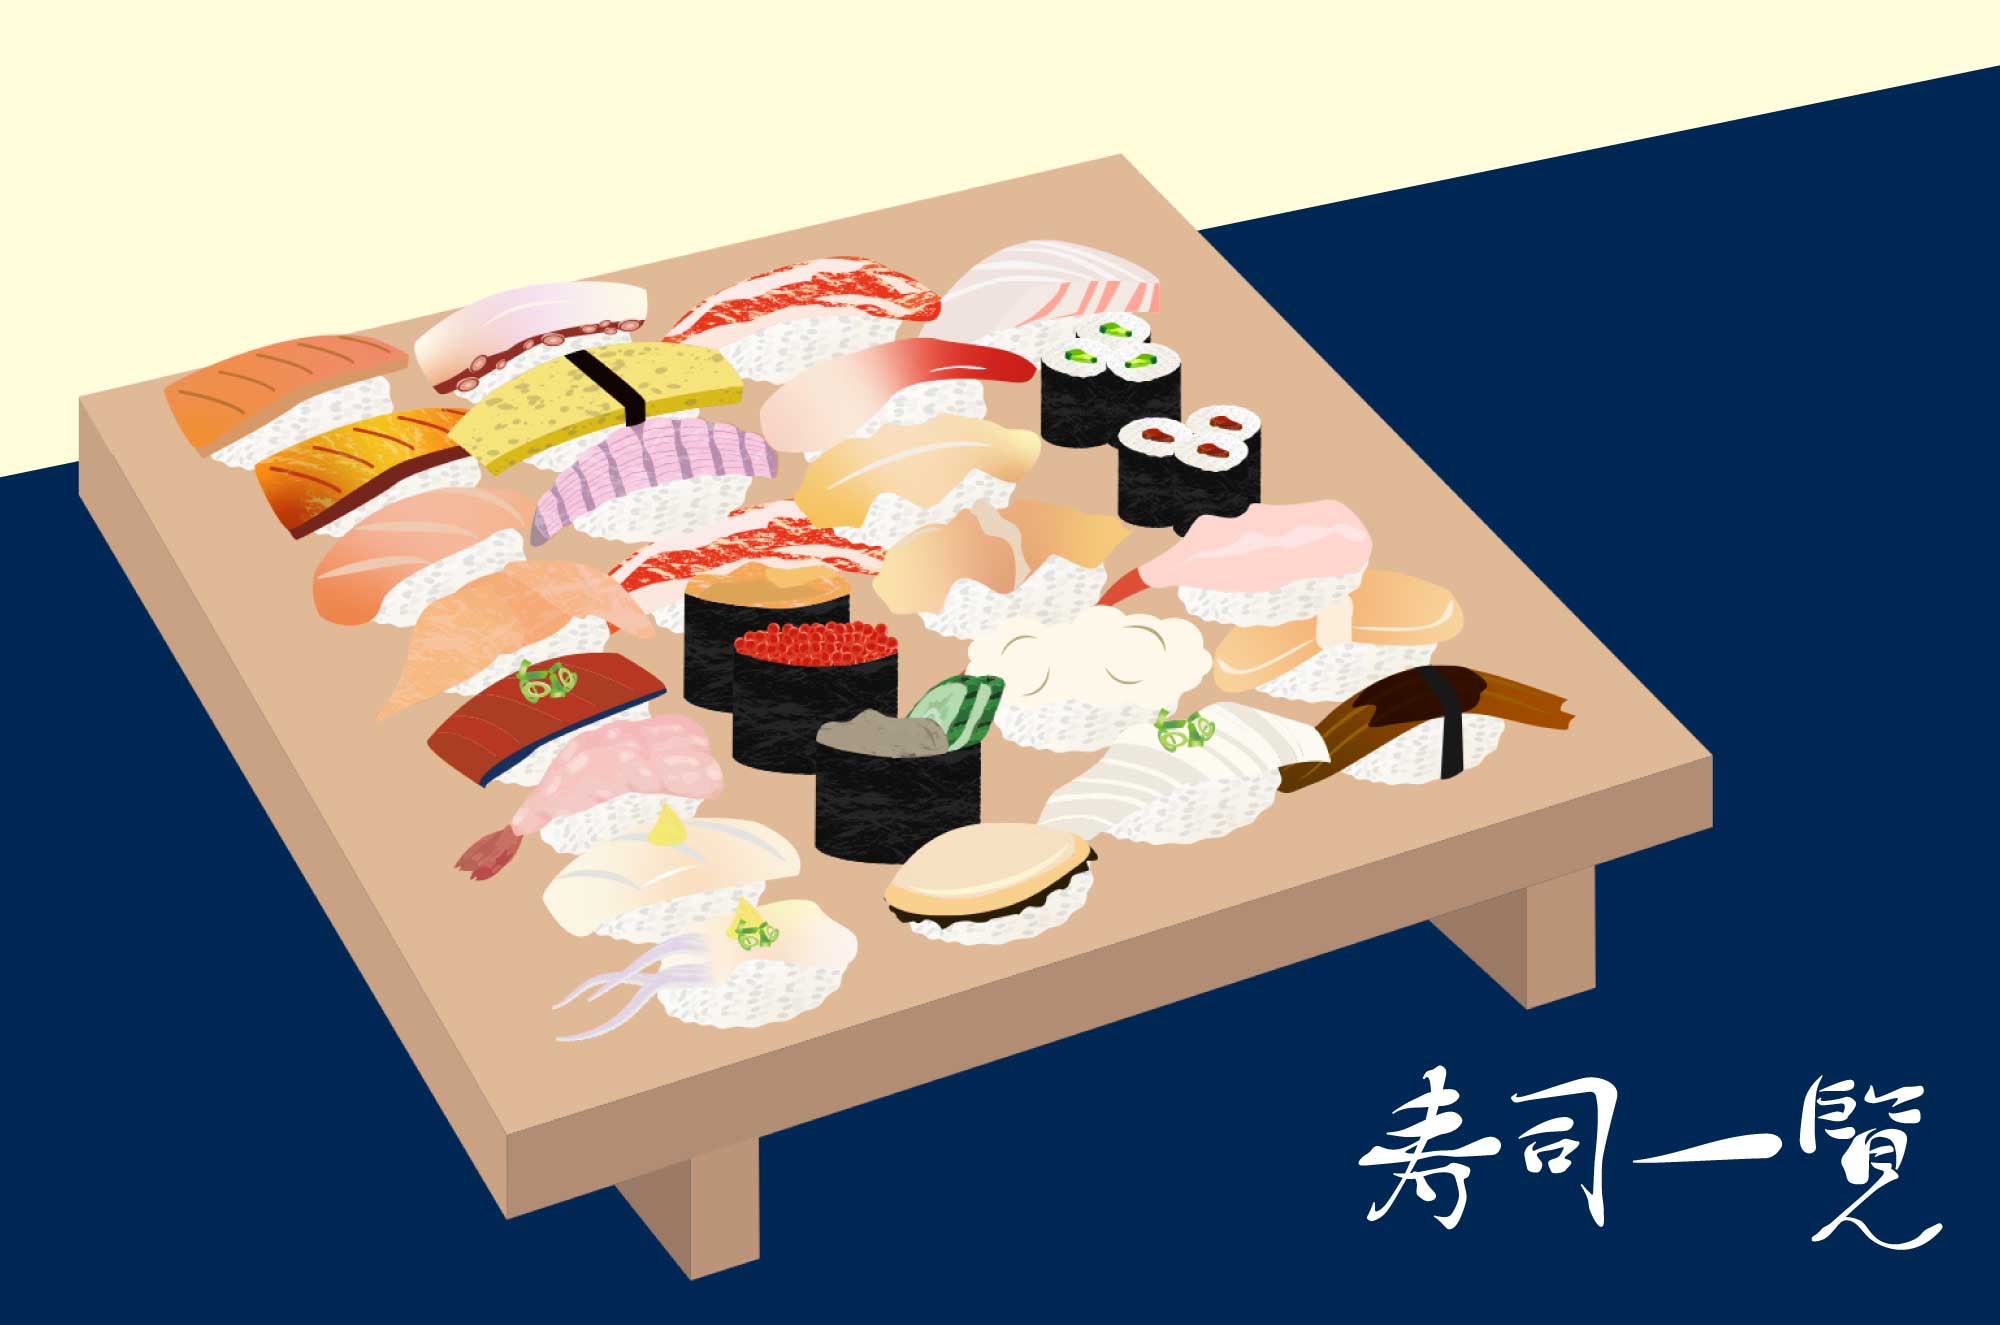 アニメ画像について 綺麗な寿司 イラスト リアル